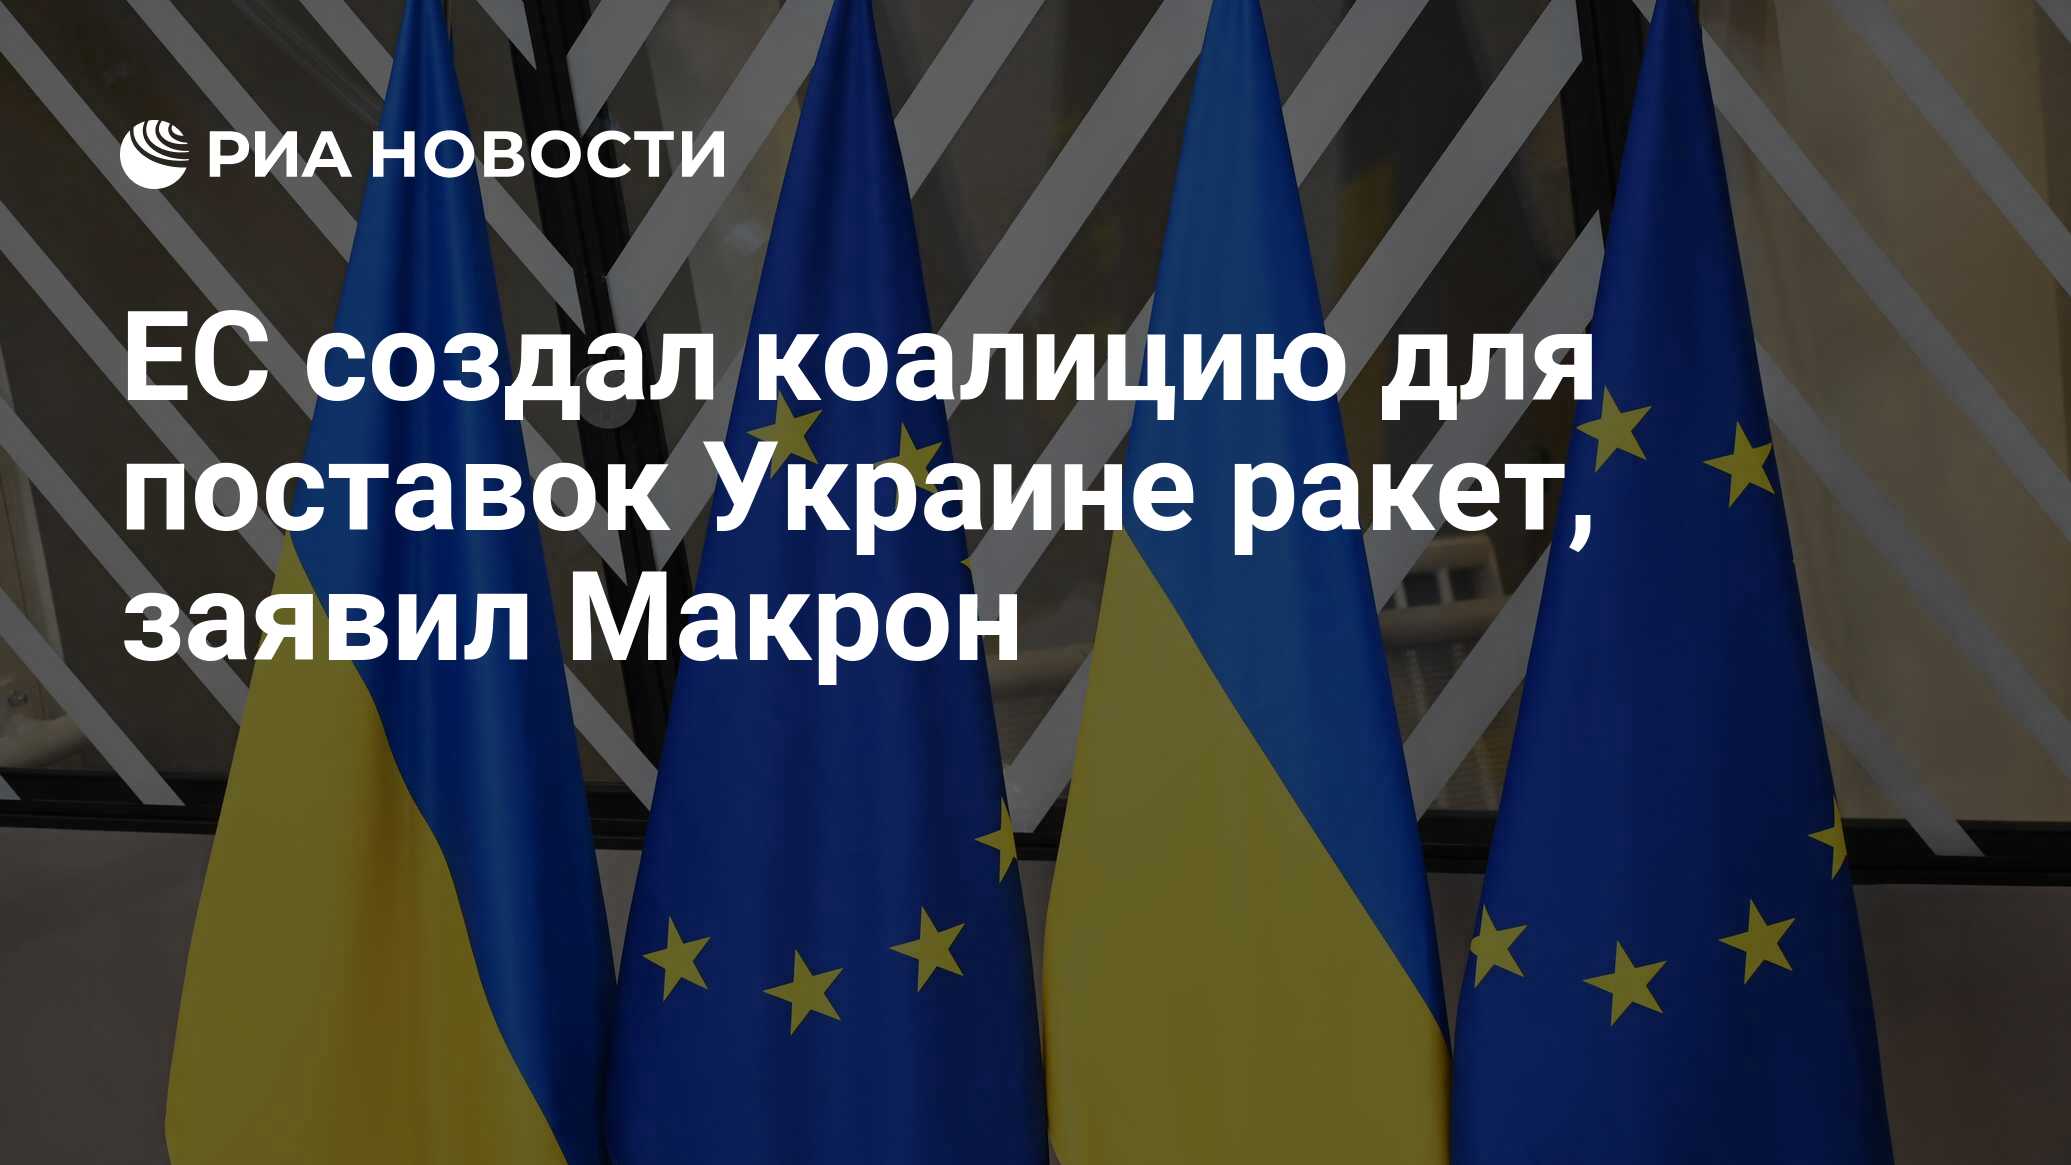 ЕС создал коалицию для поставок Украине ракет, заявил Макрон